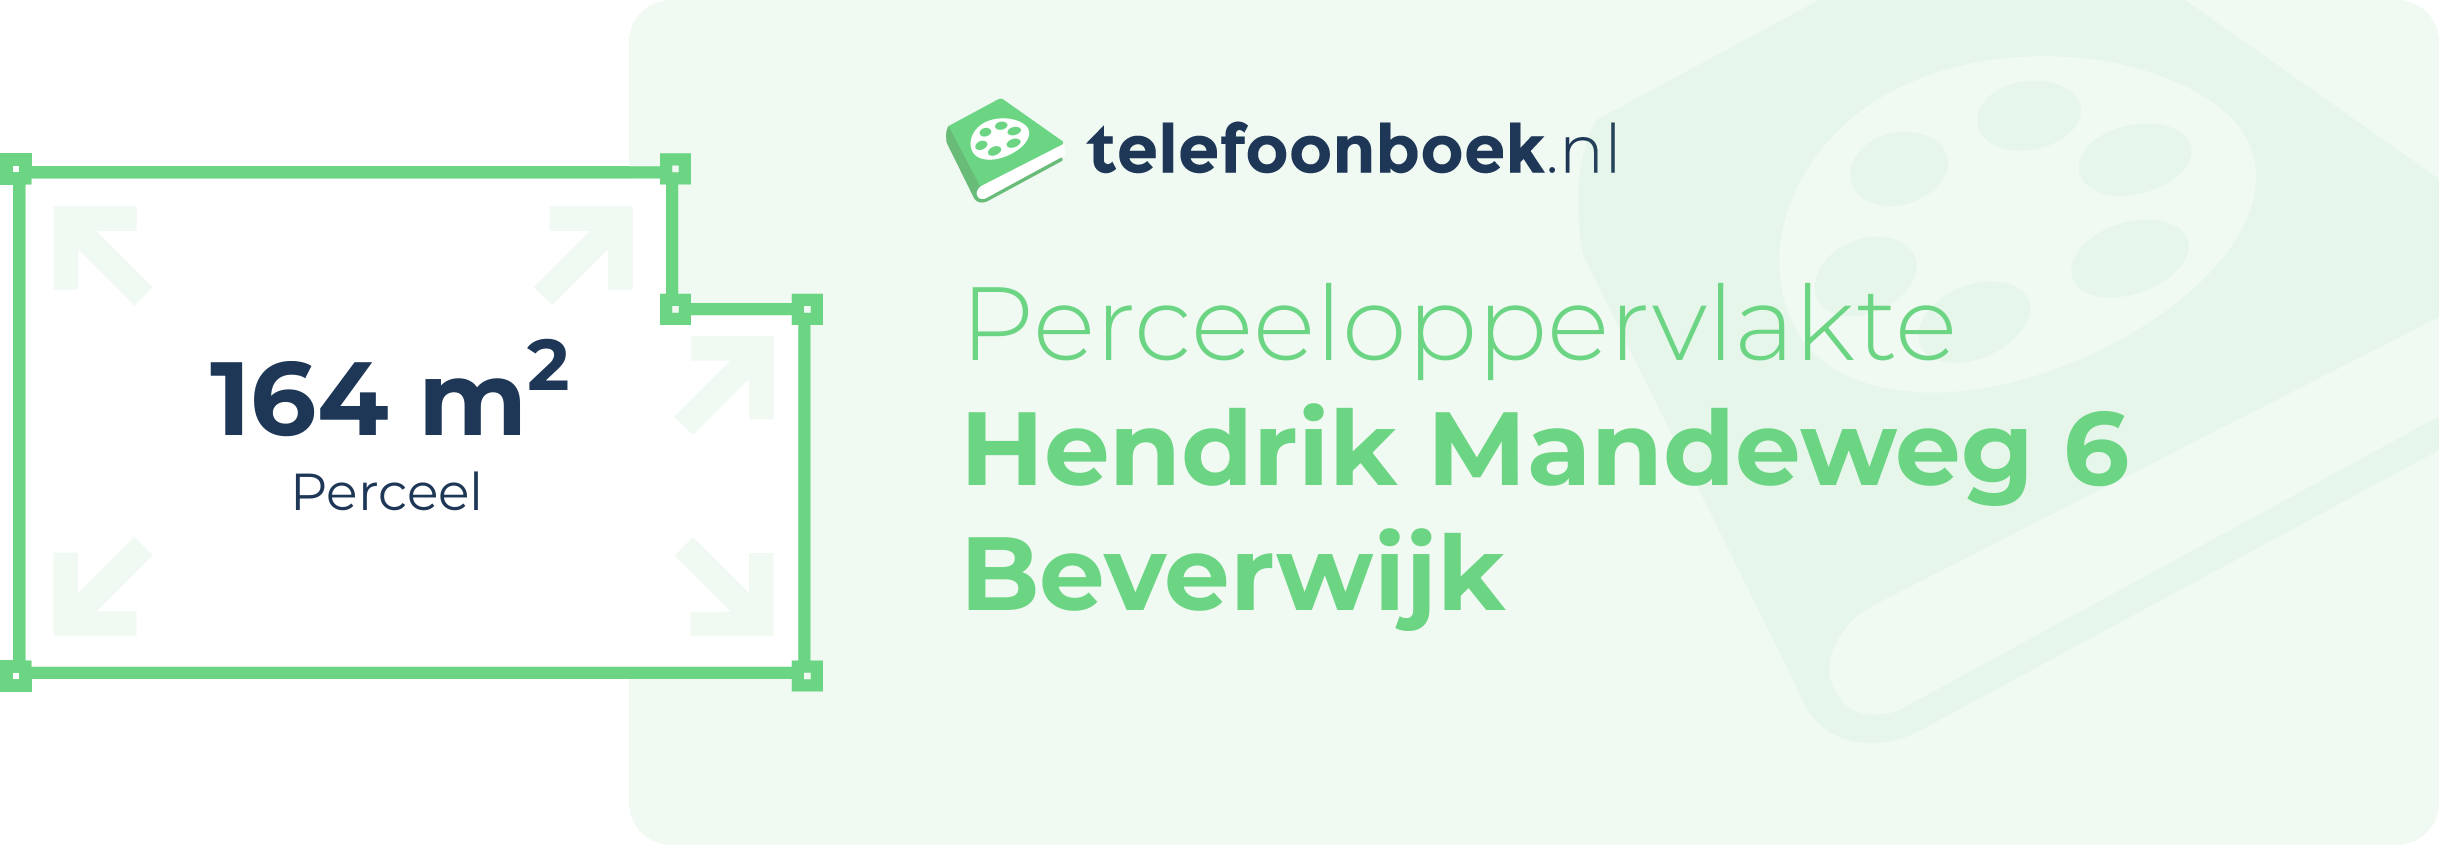 Perceeloppervlakte Hendrik Mandeweg 6 Beverwijk